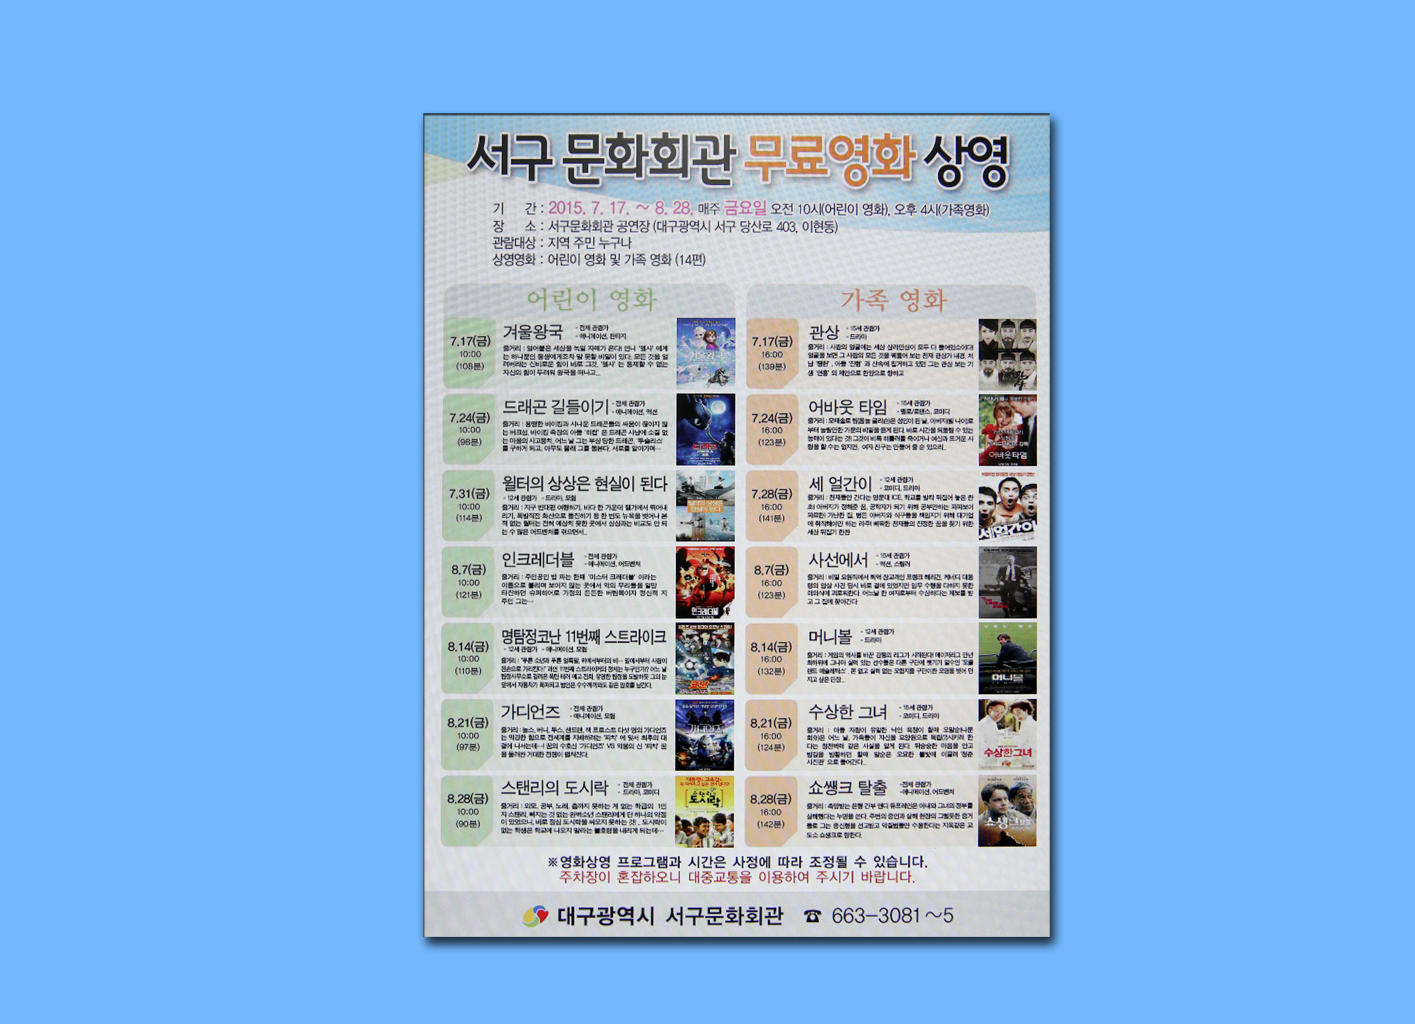 무료영화 상영 (8.3 문화회관) 2